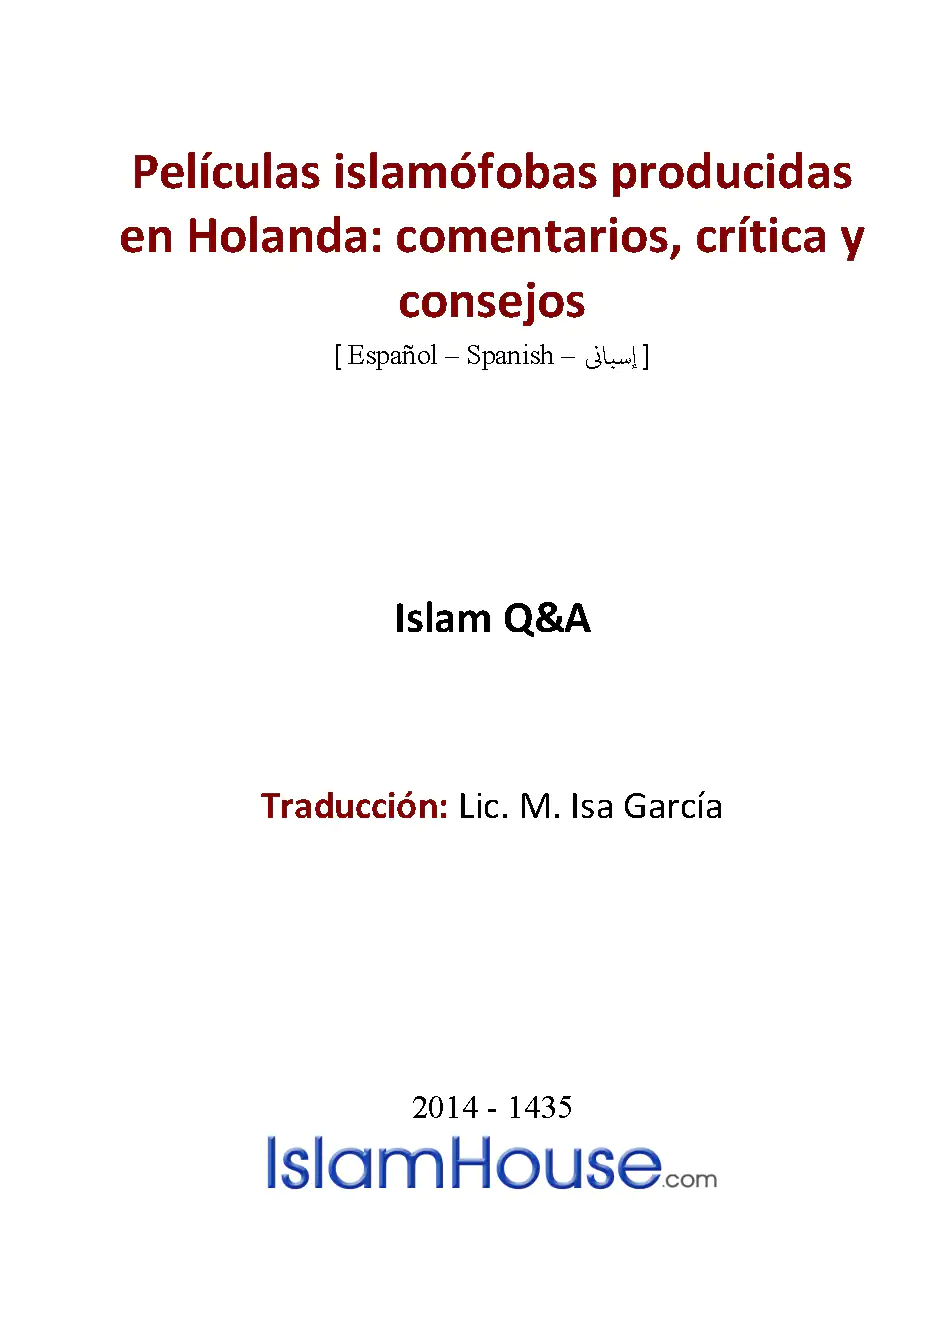 Películas islamófobas producidas en Holanda: comentarios, crítica y consejos